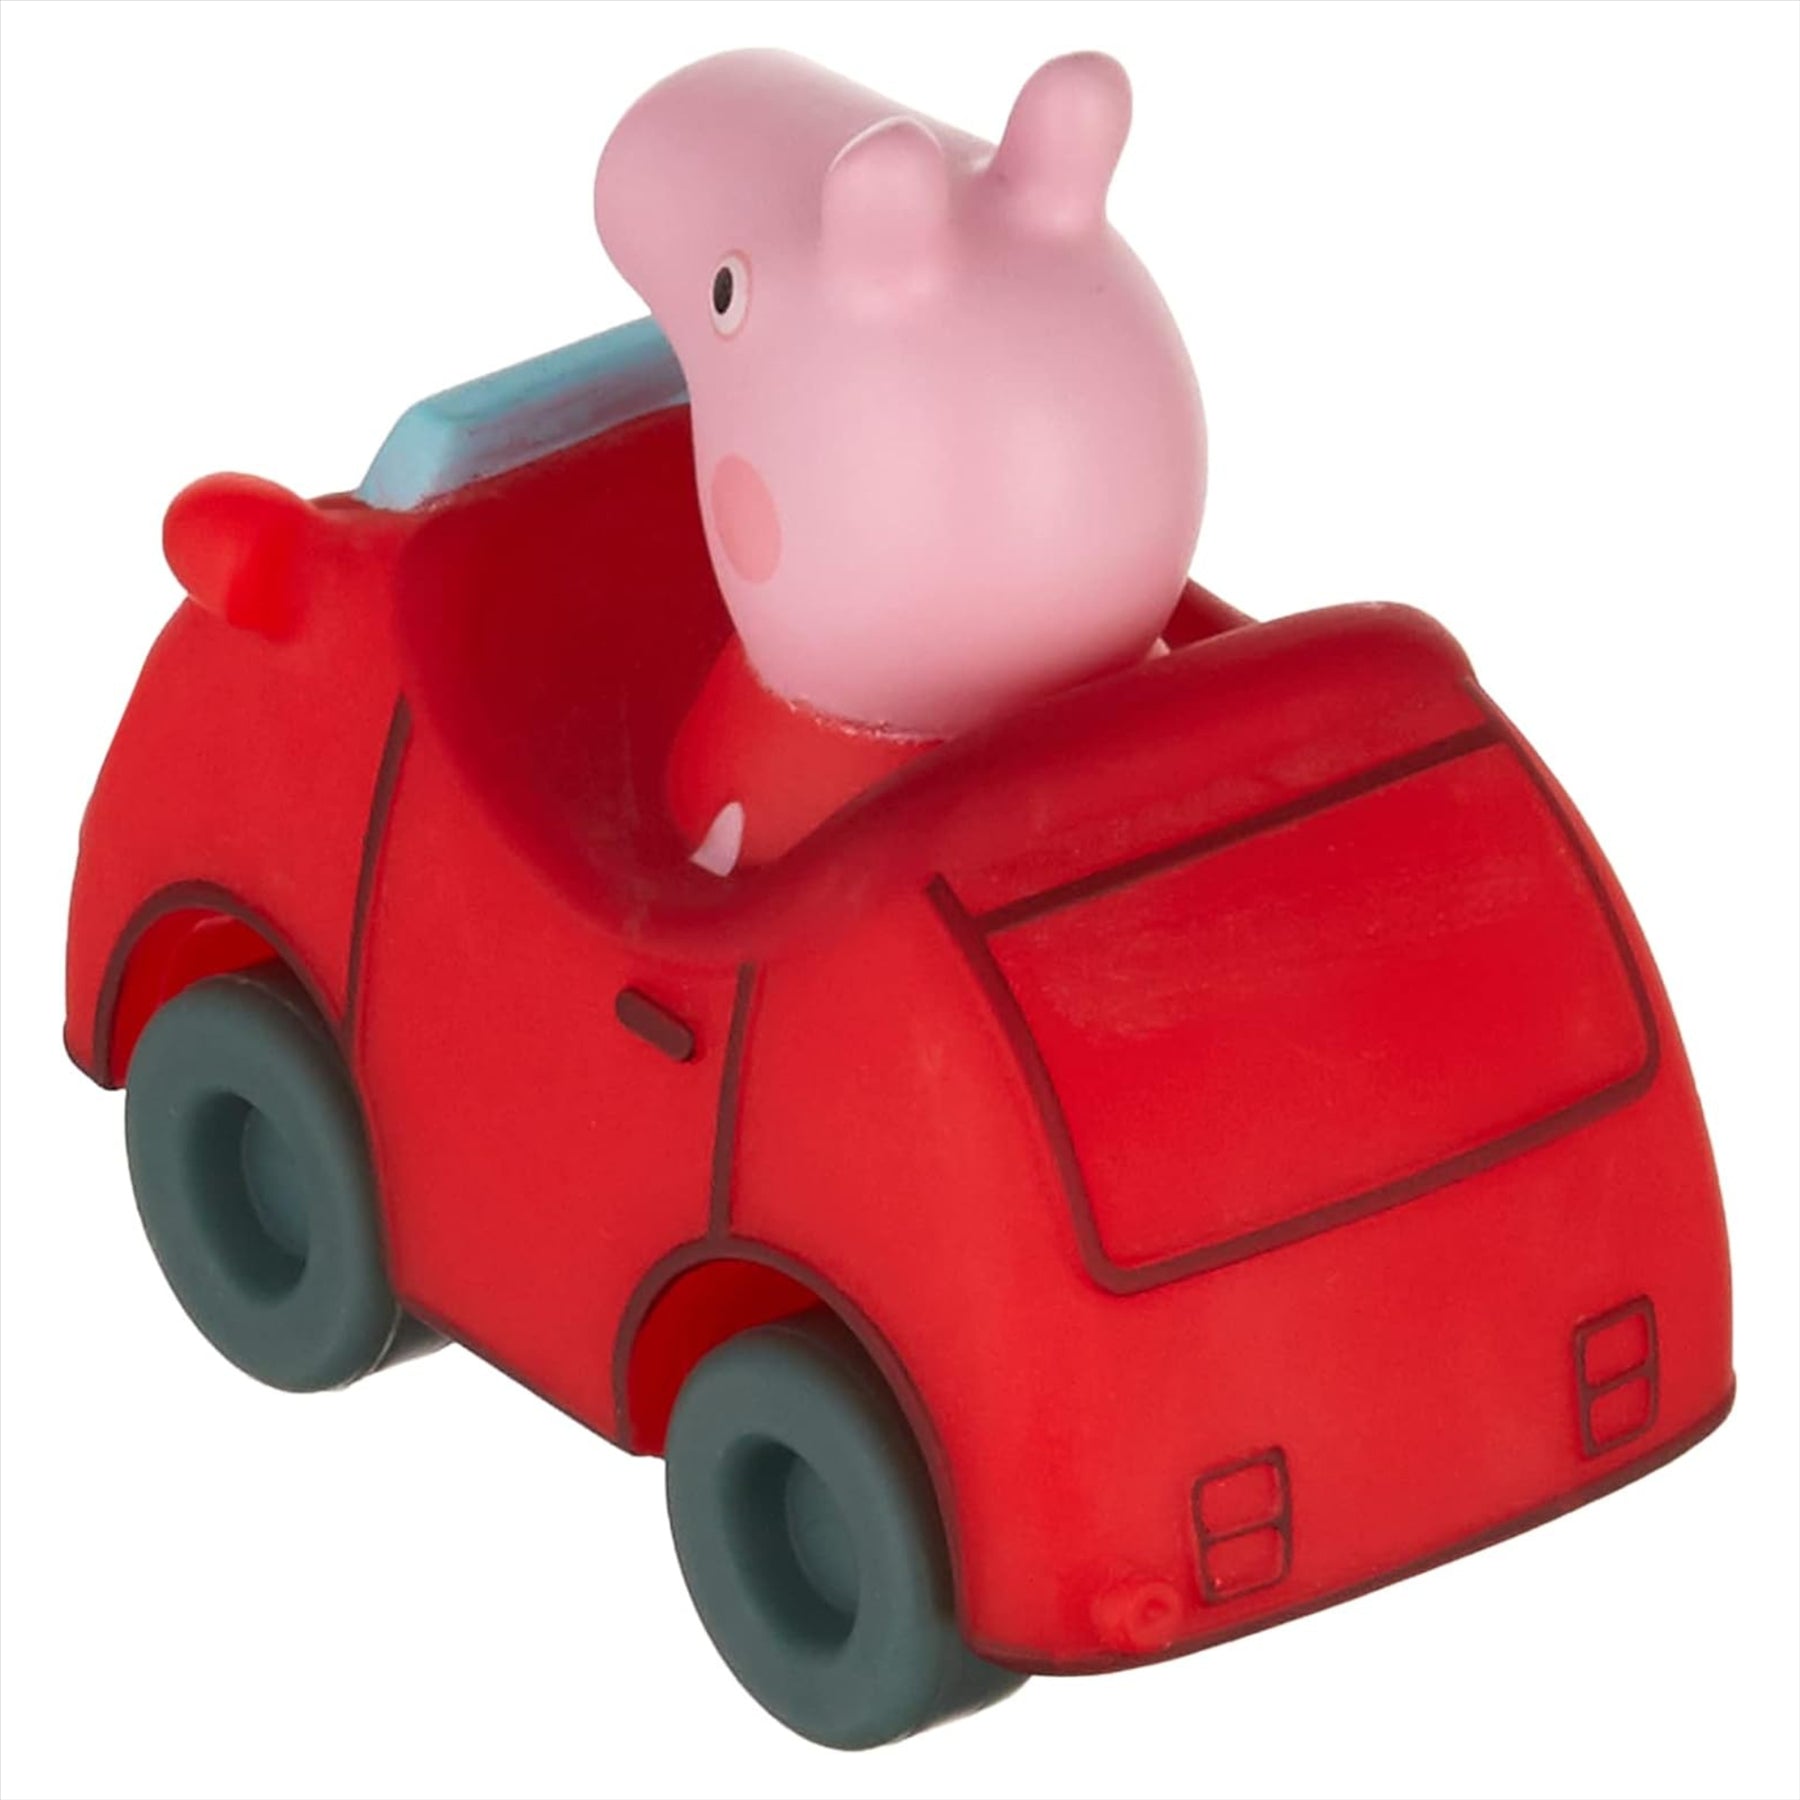 Peppa Pig Little Buggies - Peppa Pig Figure in Red Toy Car Vehicle - Toptoys2u